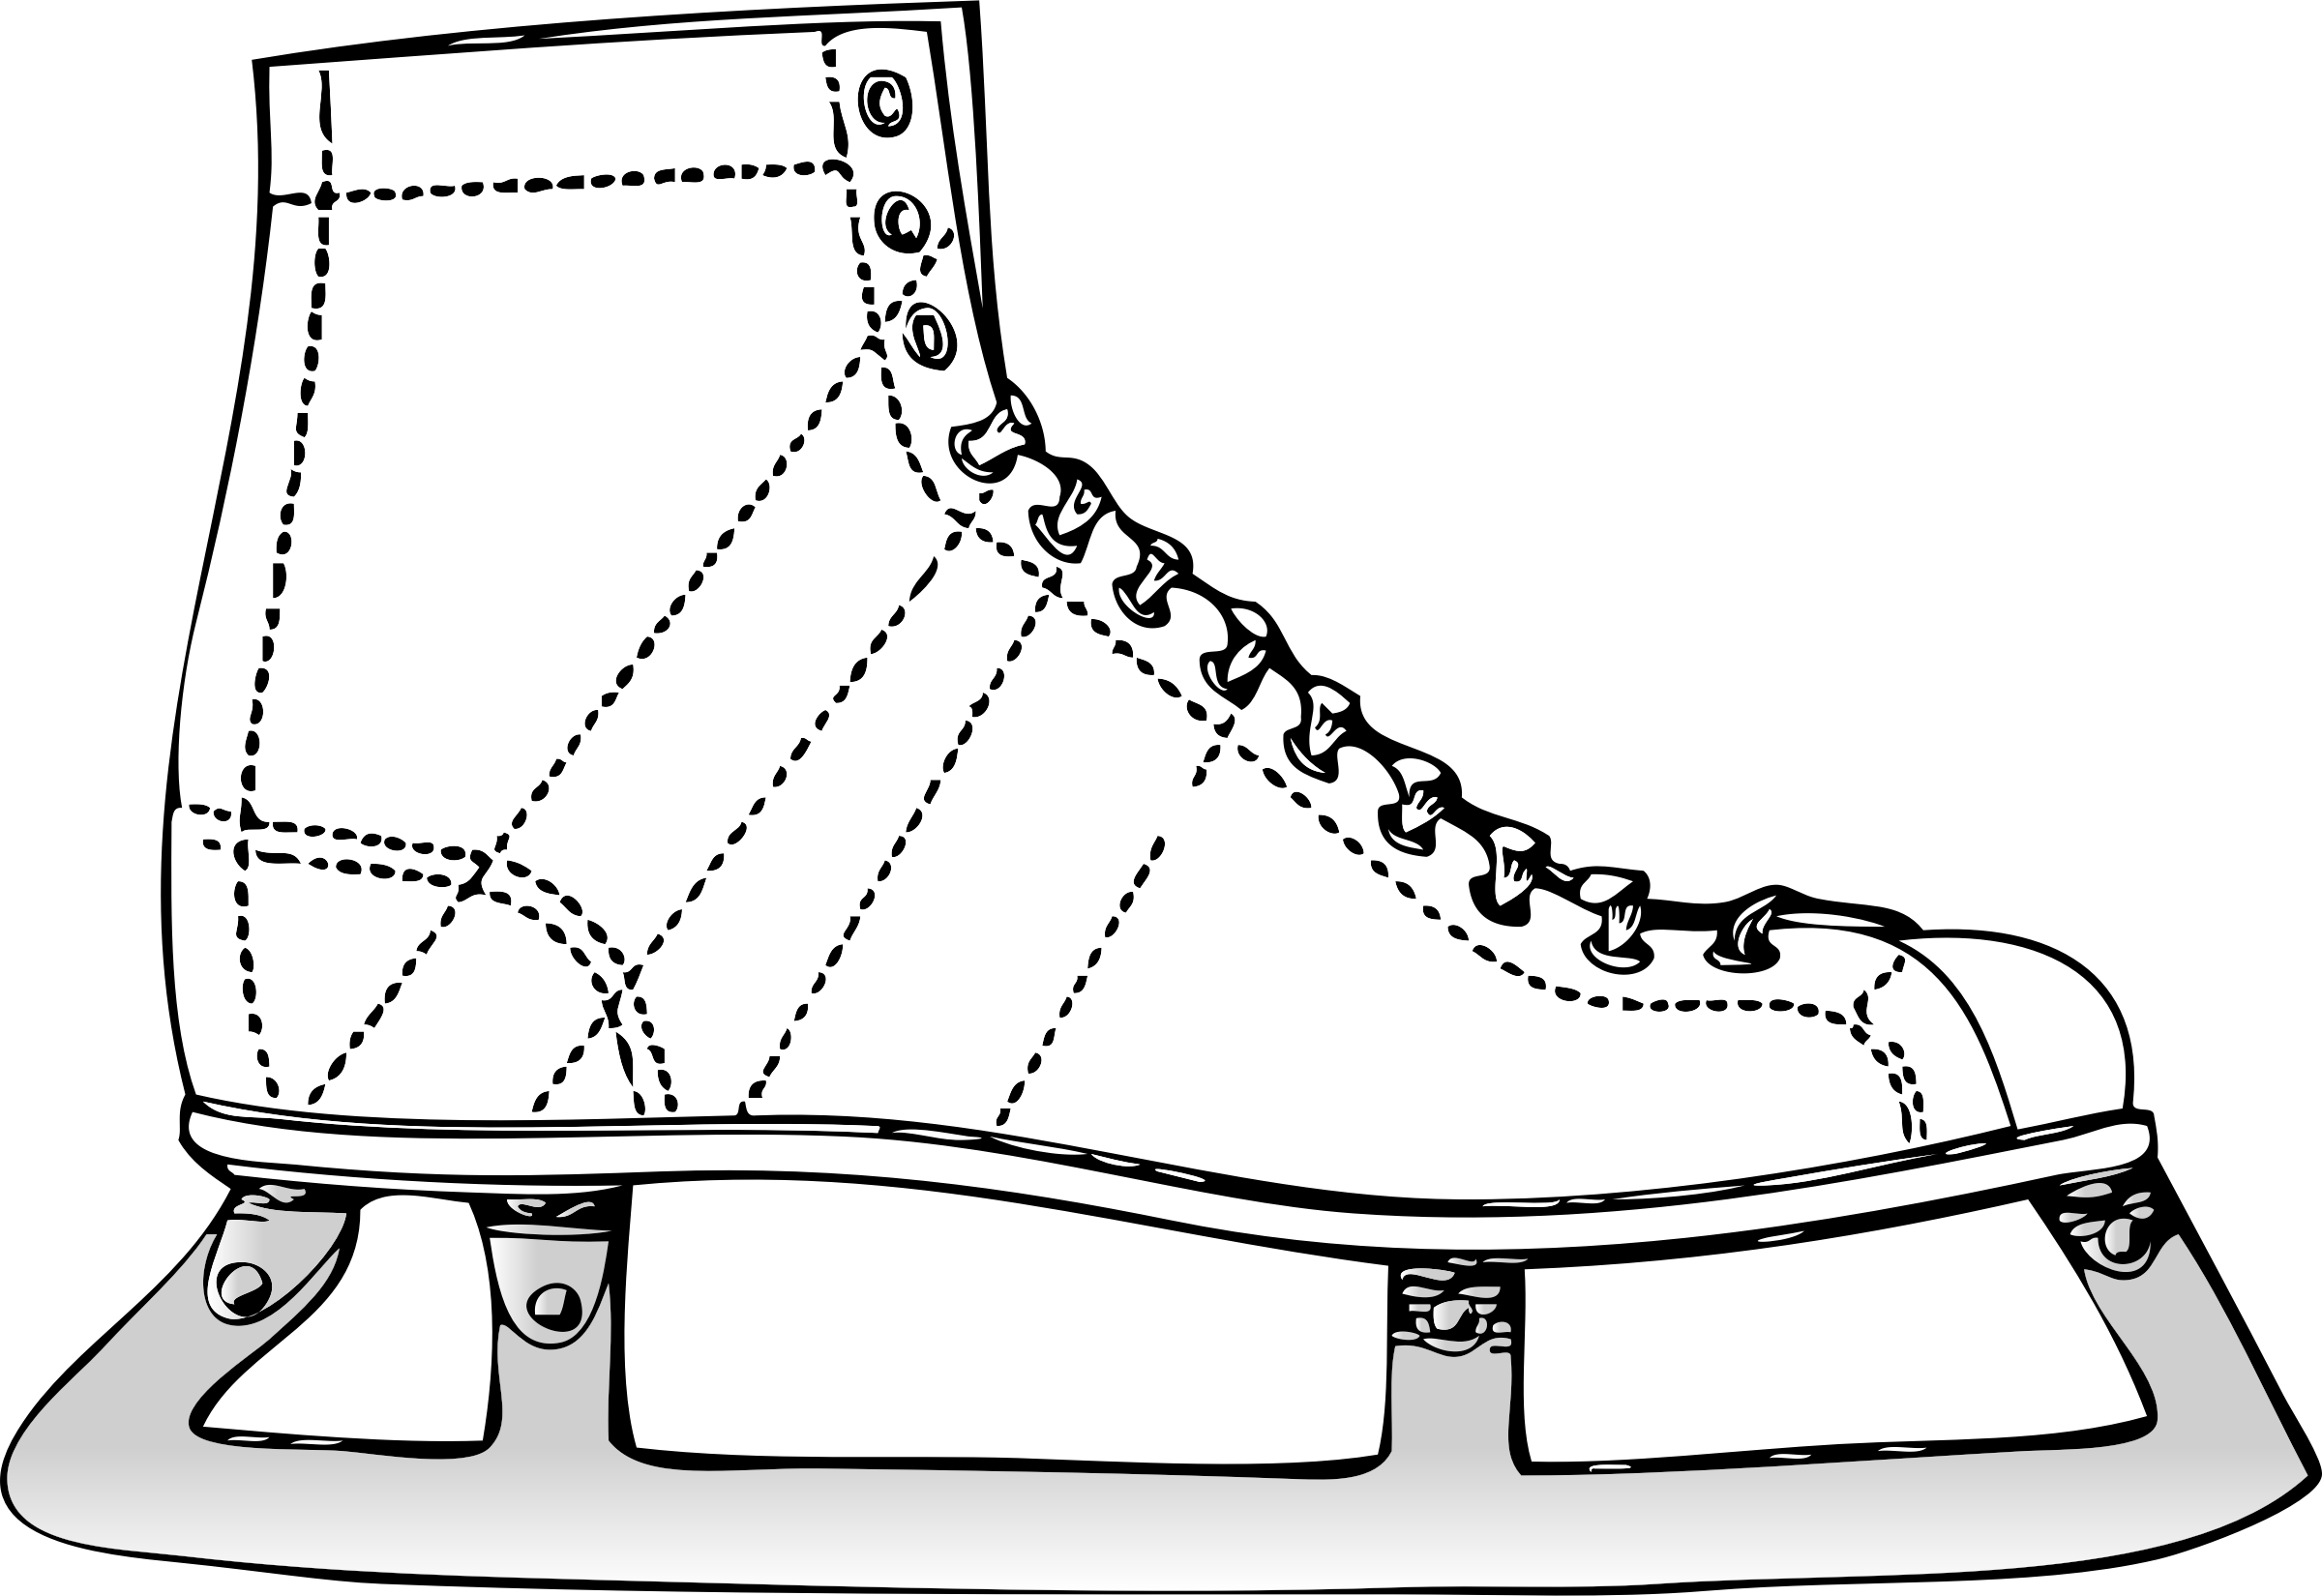 Ice Skate Illustration.png